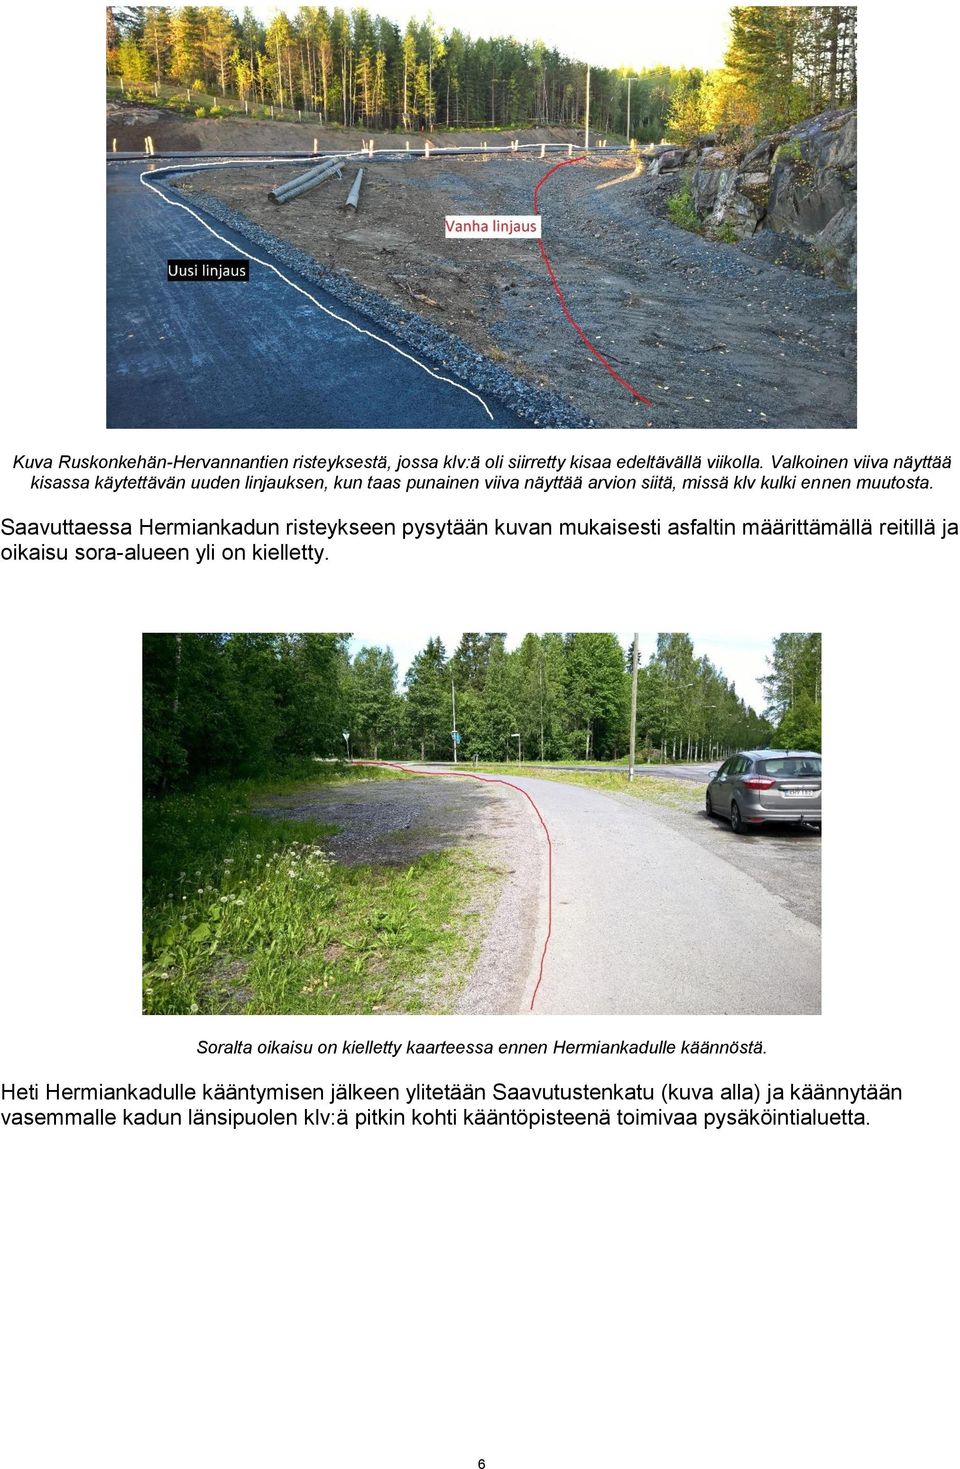 Saavuttaessa Hermiankadun risteykseen pysytään kuvan mukaisesti asfaltin määrittämällä reitillä ja oikaisu sora-alueen yli on kielletty.